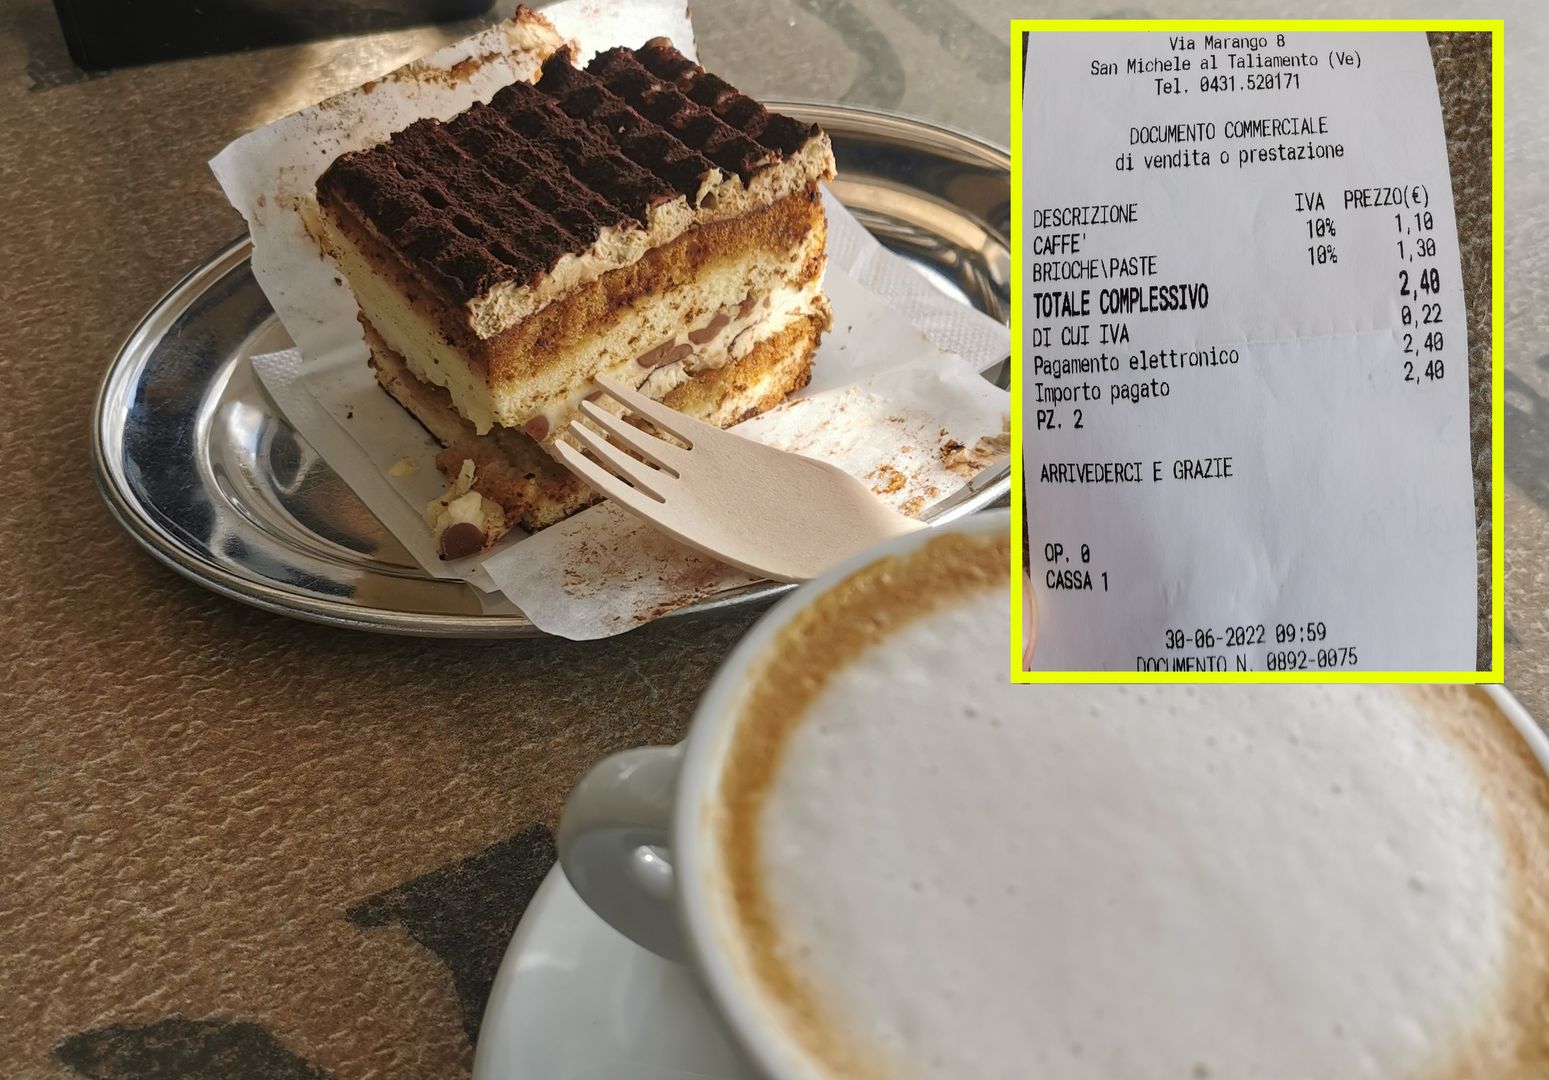 Zamówił kawę i ciasto we Włoszech. Nie mógł uwierzyć w kwotę na rachunku